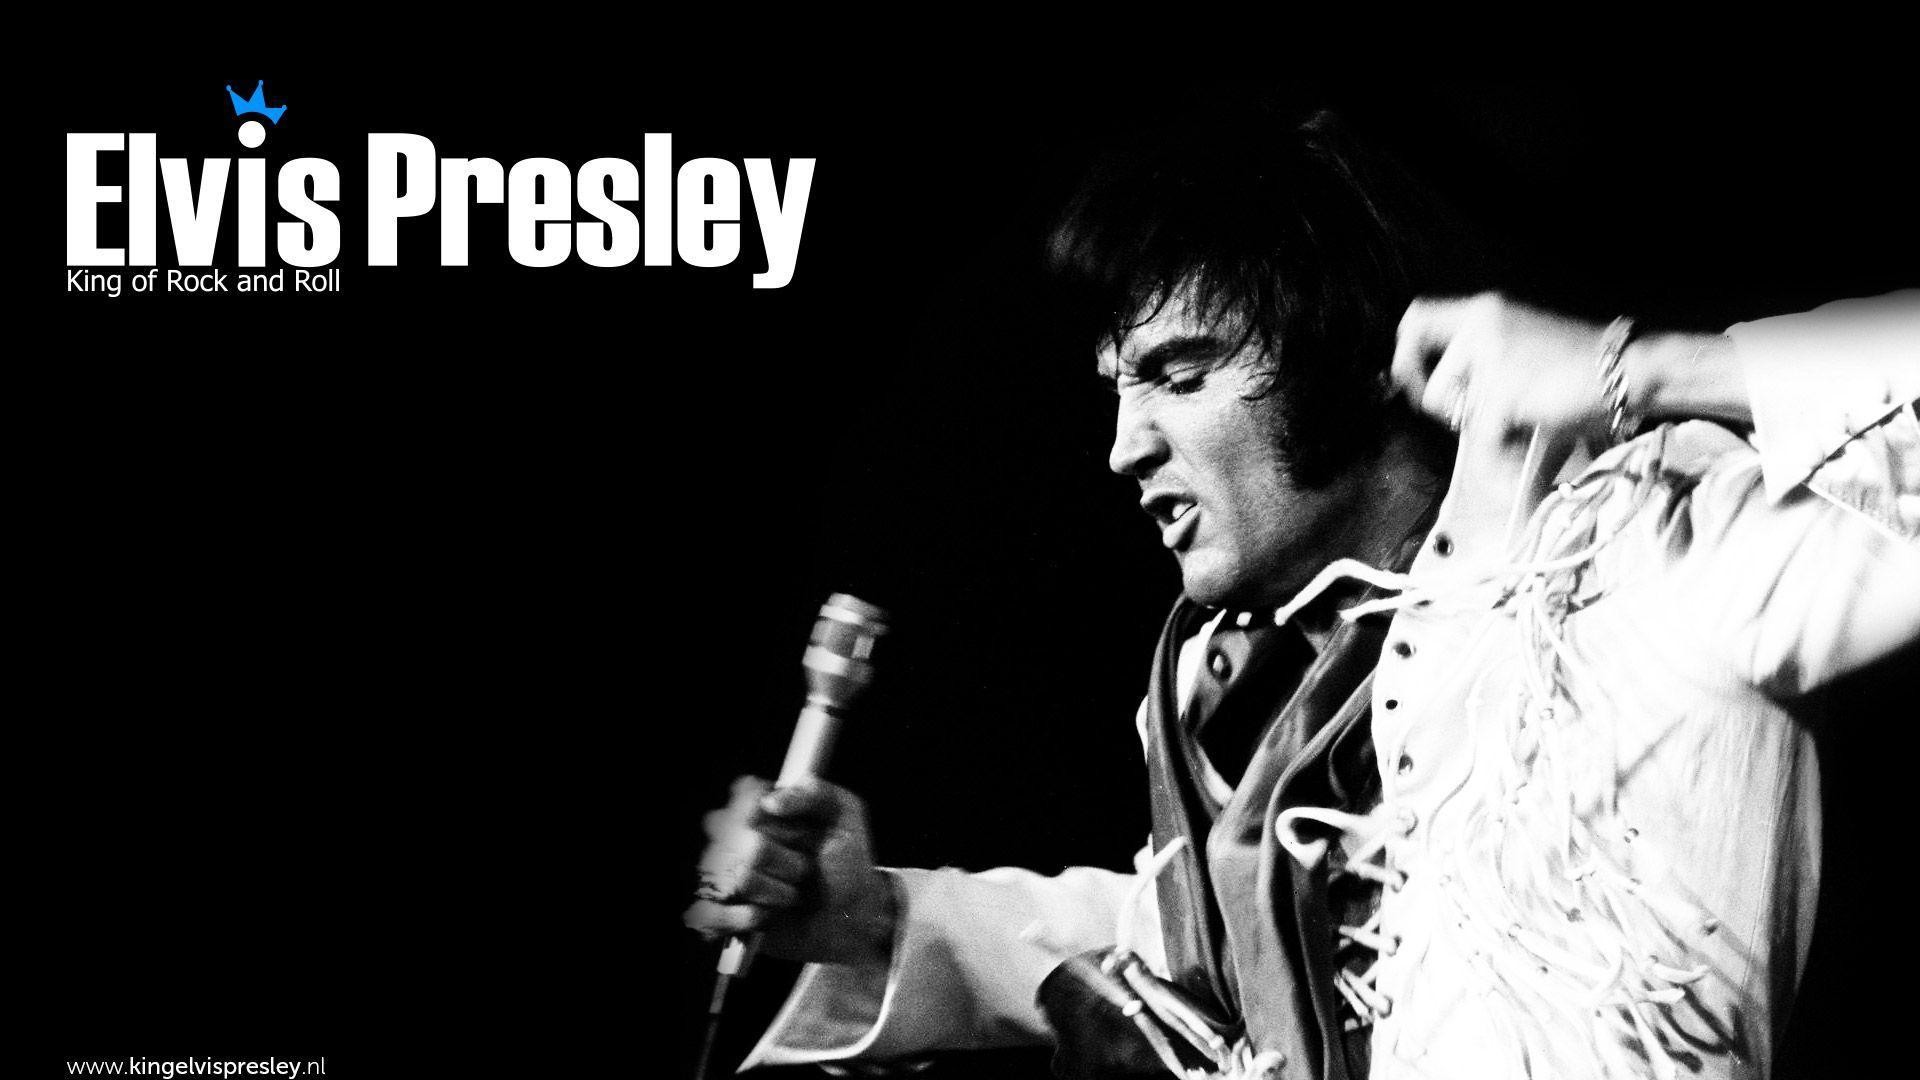 1920x1080 Elvis Presley wallpapers | Elvis Presley background